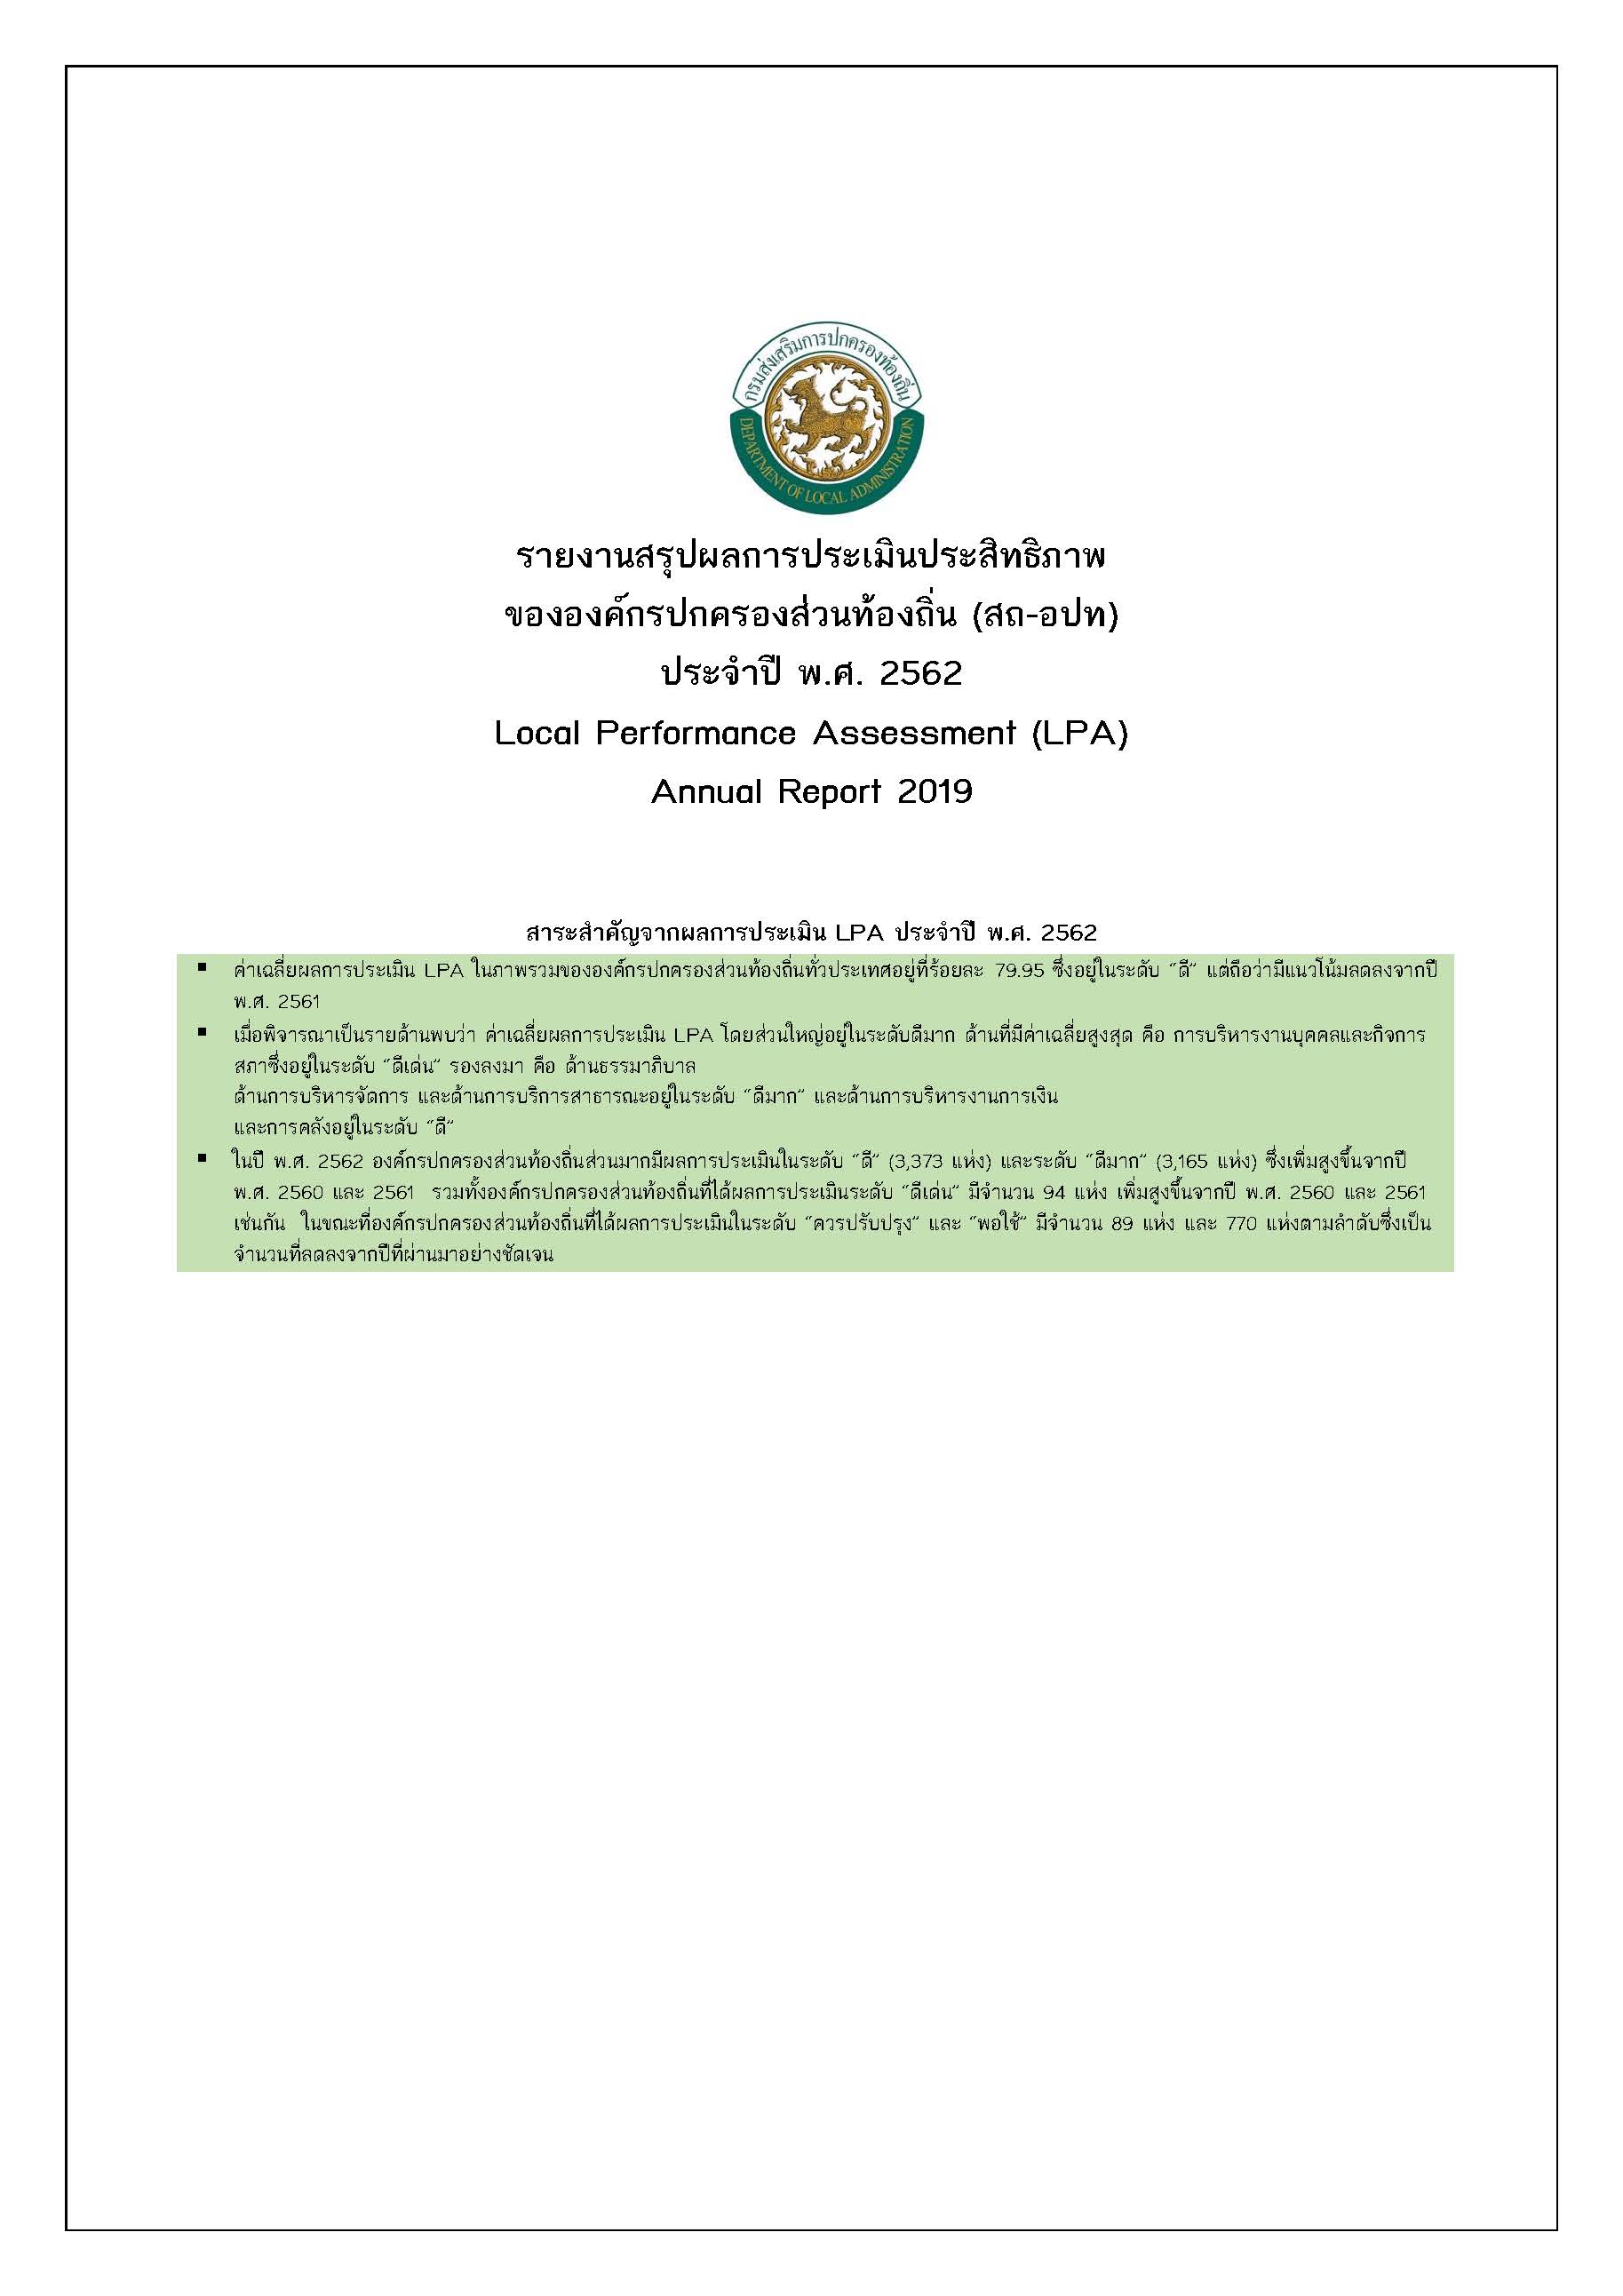 รายงานสรุปผลการประเมินประสิทธิภาพ ขององค์กรปกครองส่วนท้องถิ่น (สถ-อปท) ประจาปี พ.ศ. 2562